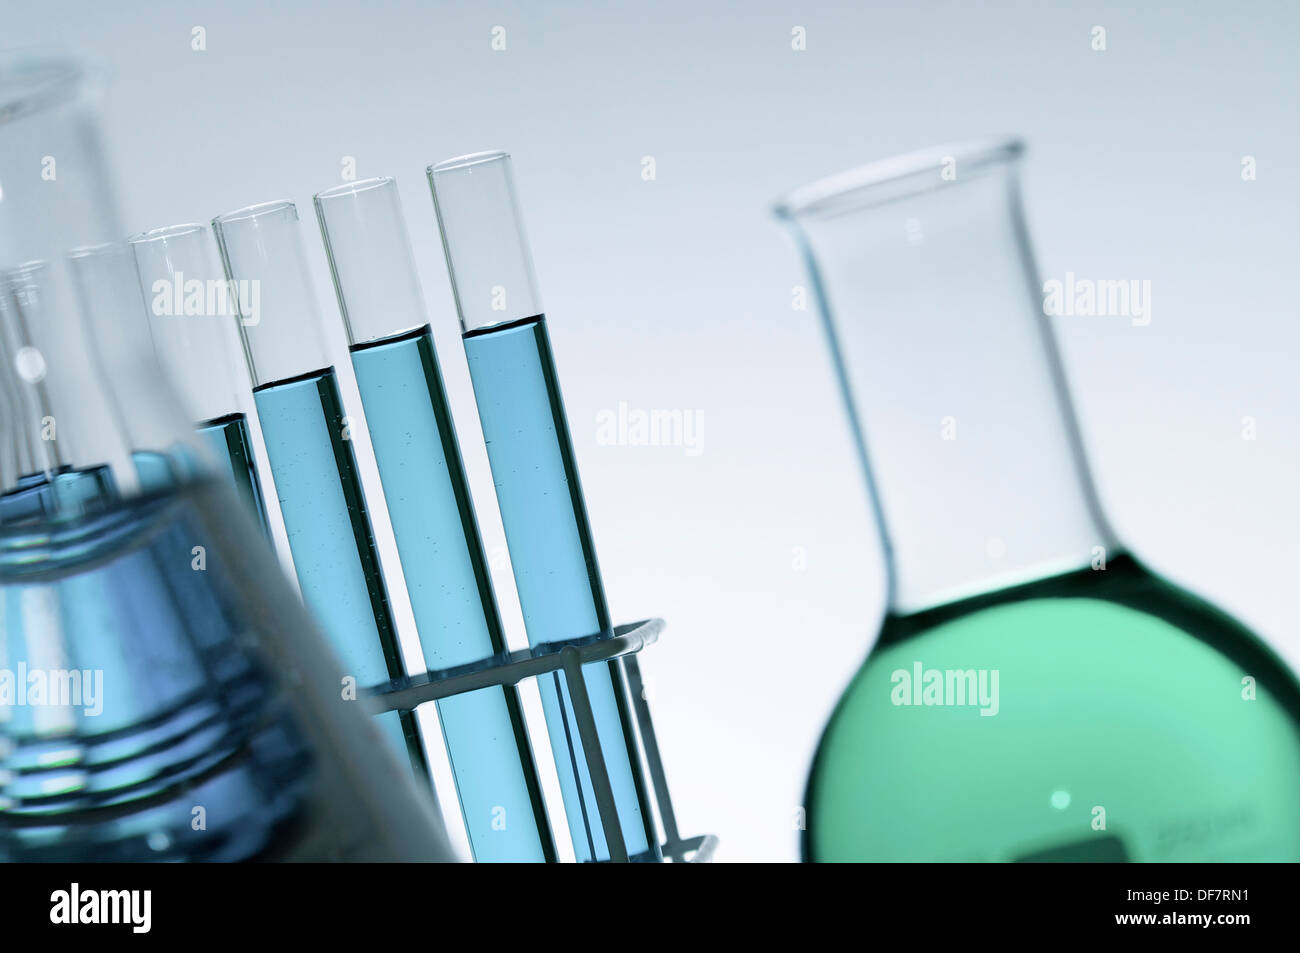 Gruppe von Glaskolben in einem Chemielabor Stockfoto